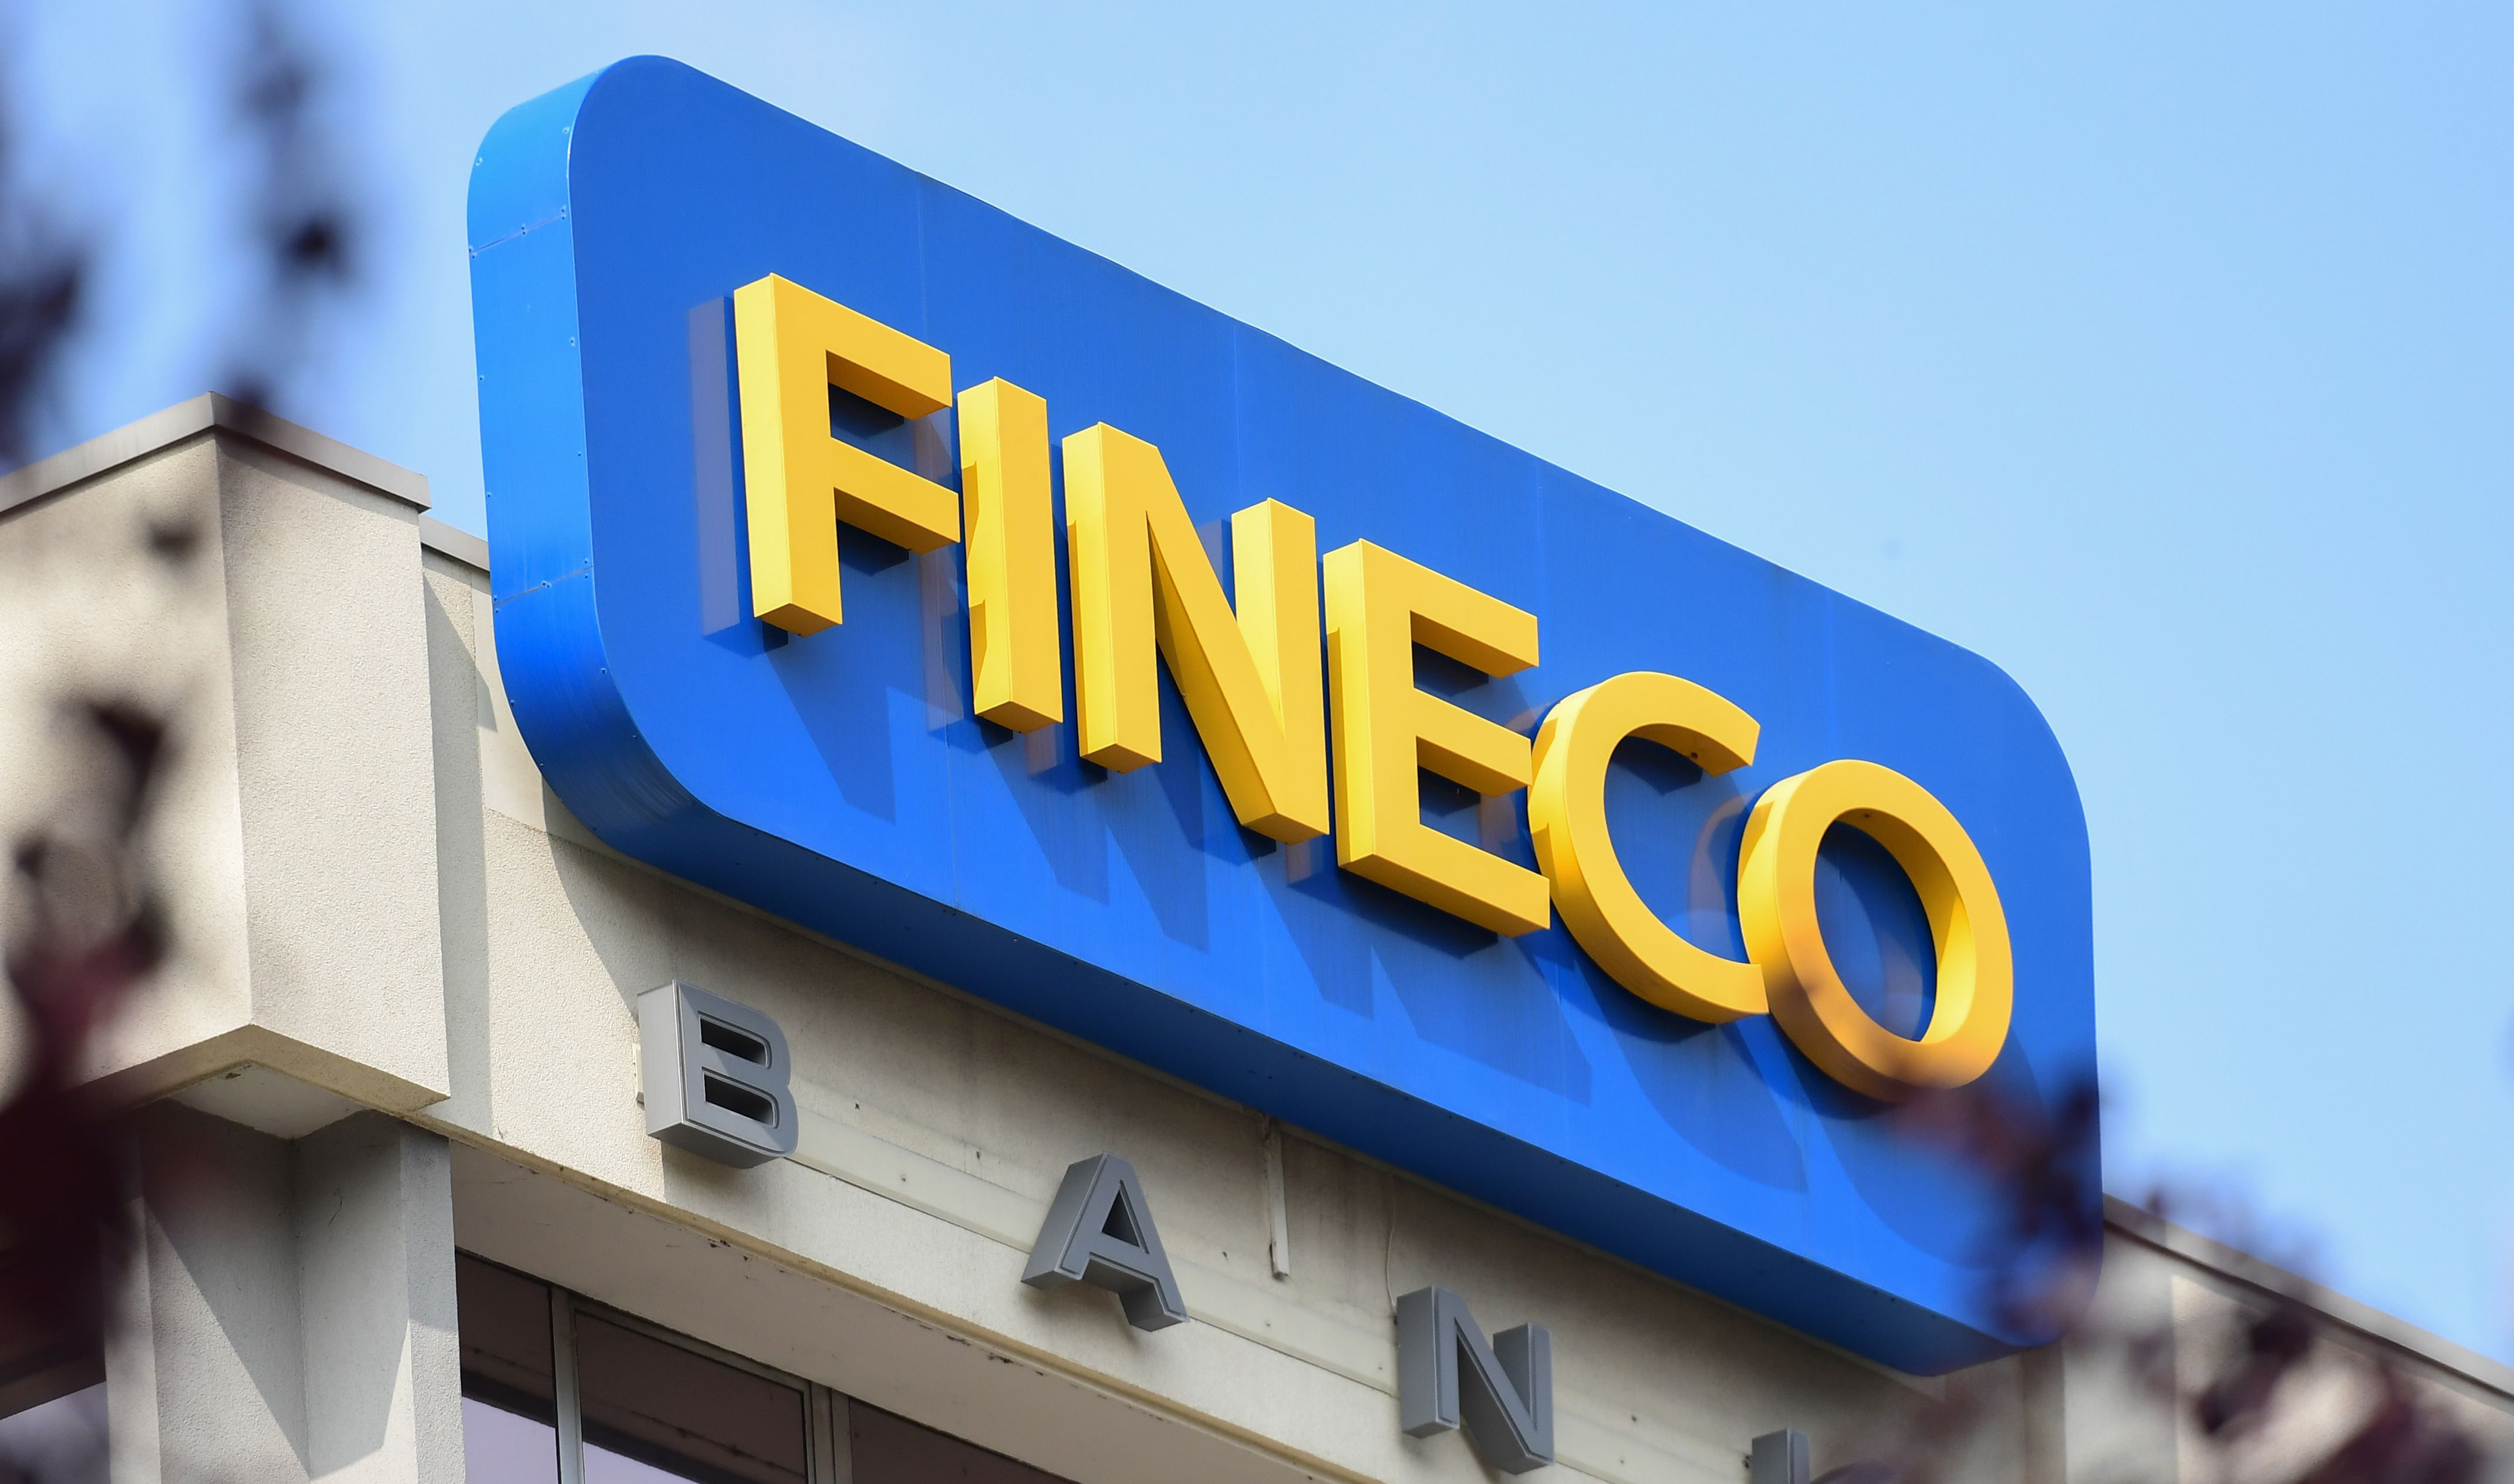 financialounge -  Fineco Asset Management